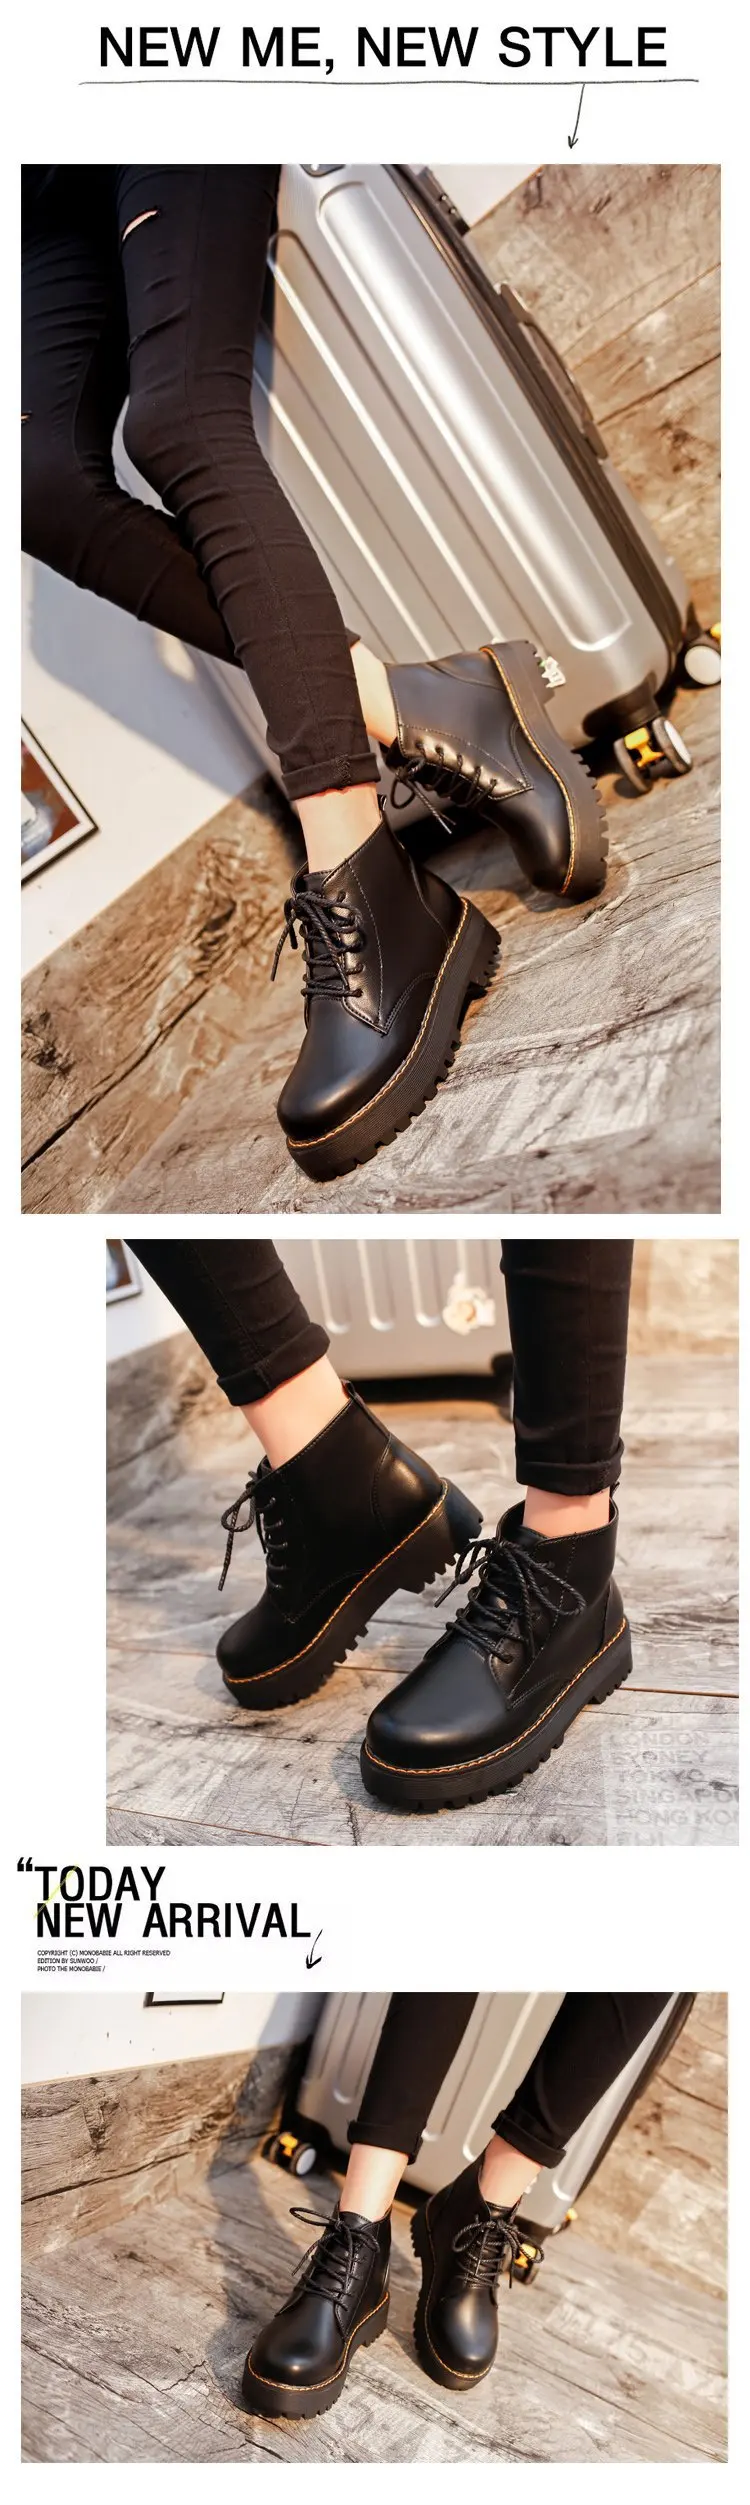 Ботильоны с круглым носком; женские ботинки на шнуровке на плоской подошве; Байкерская обувь черного цвета в стиле милитари; botas mujer; Ботинки Martin в байкерском стиле